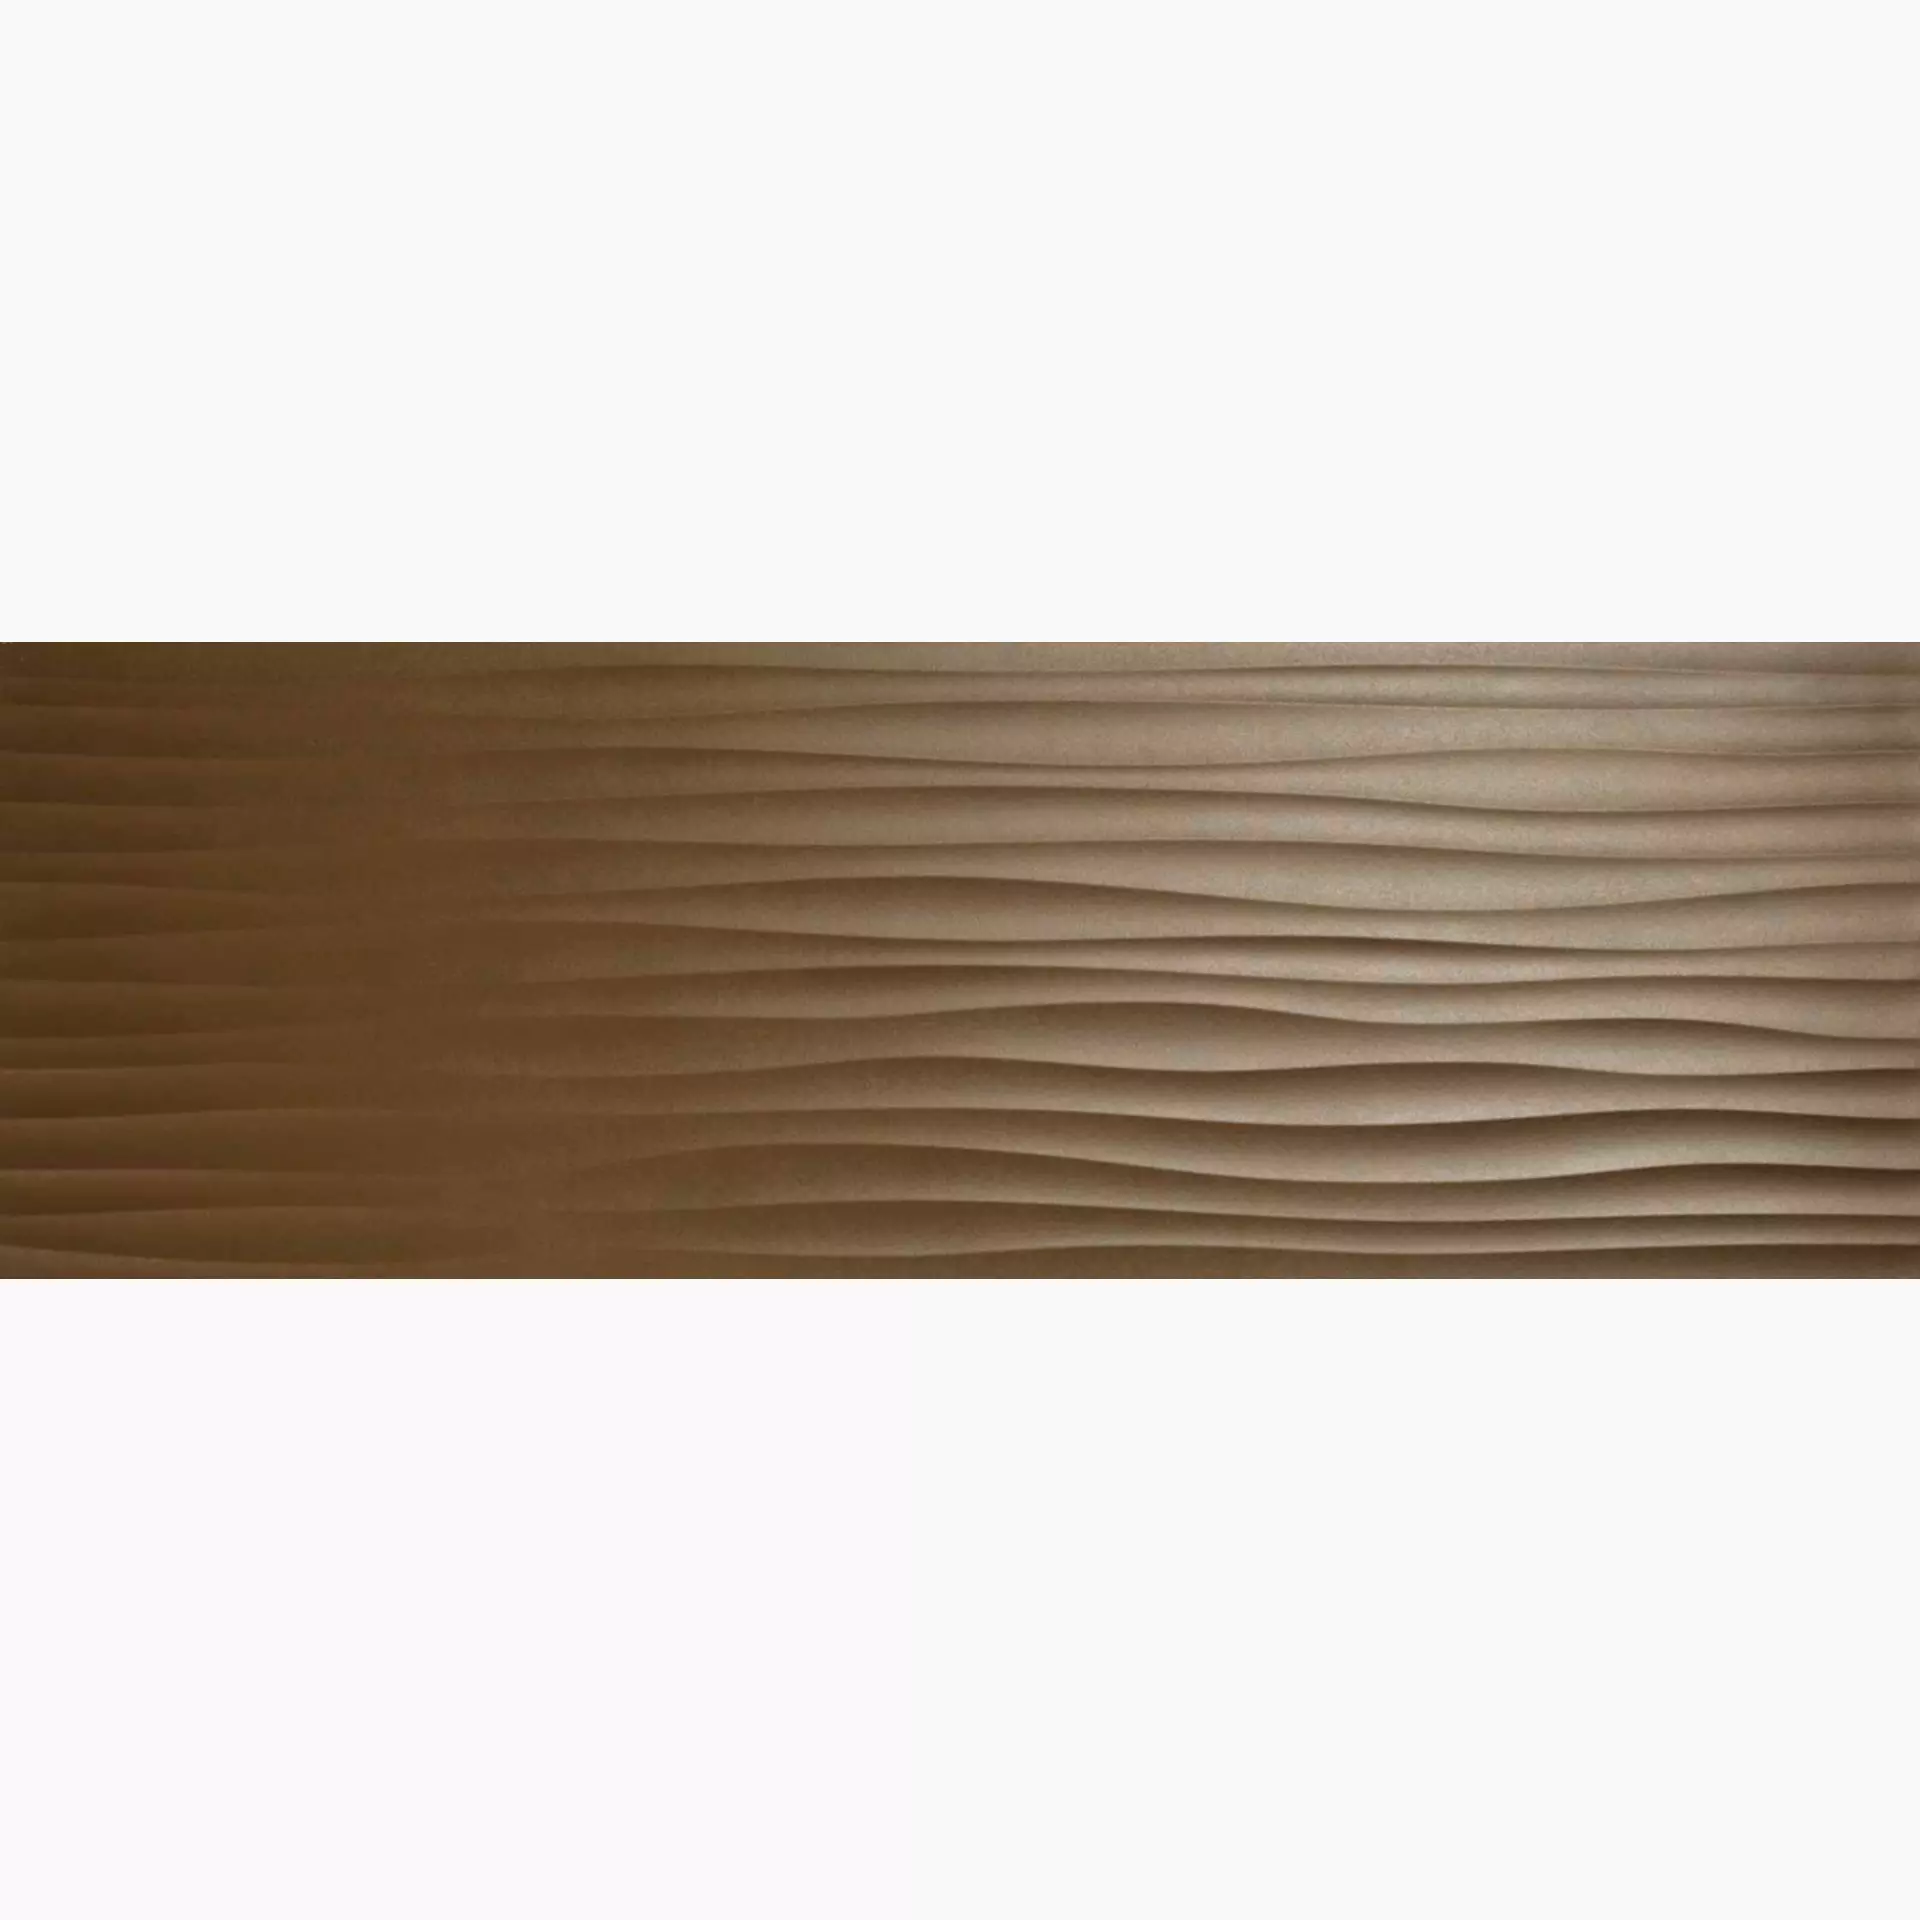 Wandfliese Marazzi Eclettica Bronze Struttura Bronze M1AM struktur 40x120cm Wave 3D rektifiziert 8mm